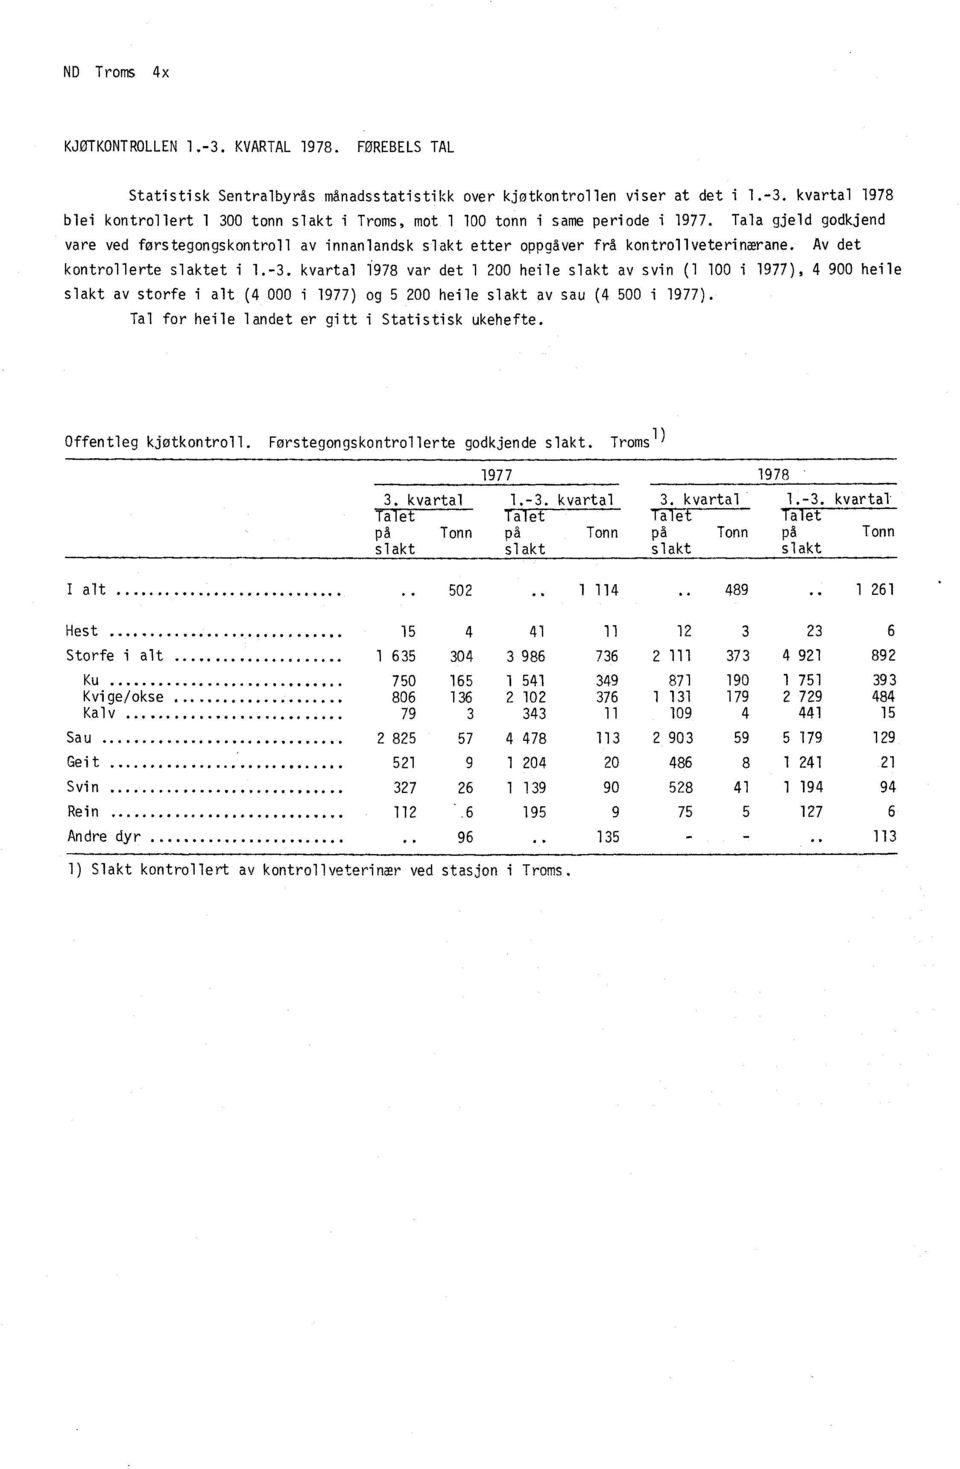 kvartal 1978 var det 1 200 heile slakt av svin (1 100 i 1977), 4 900 heile slakt av storfe i alt (4 000 i 1977) og 5 200 heile slakt av sau (4 500 i 1977).